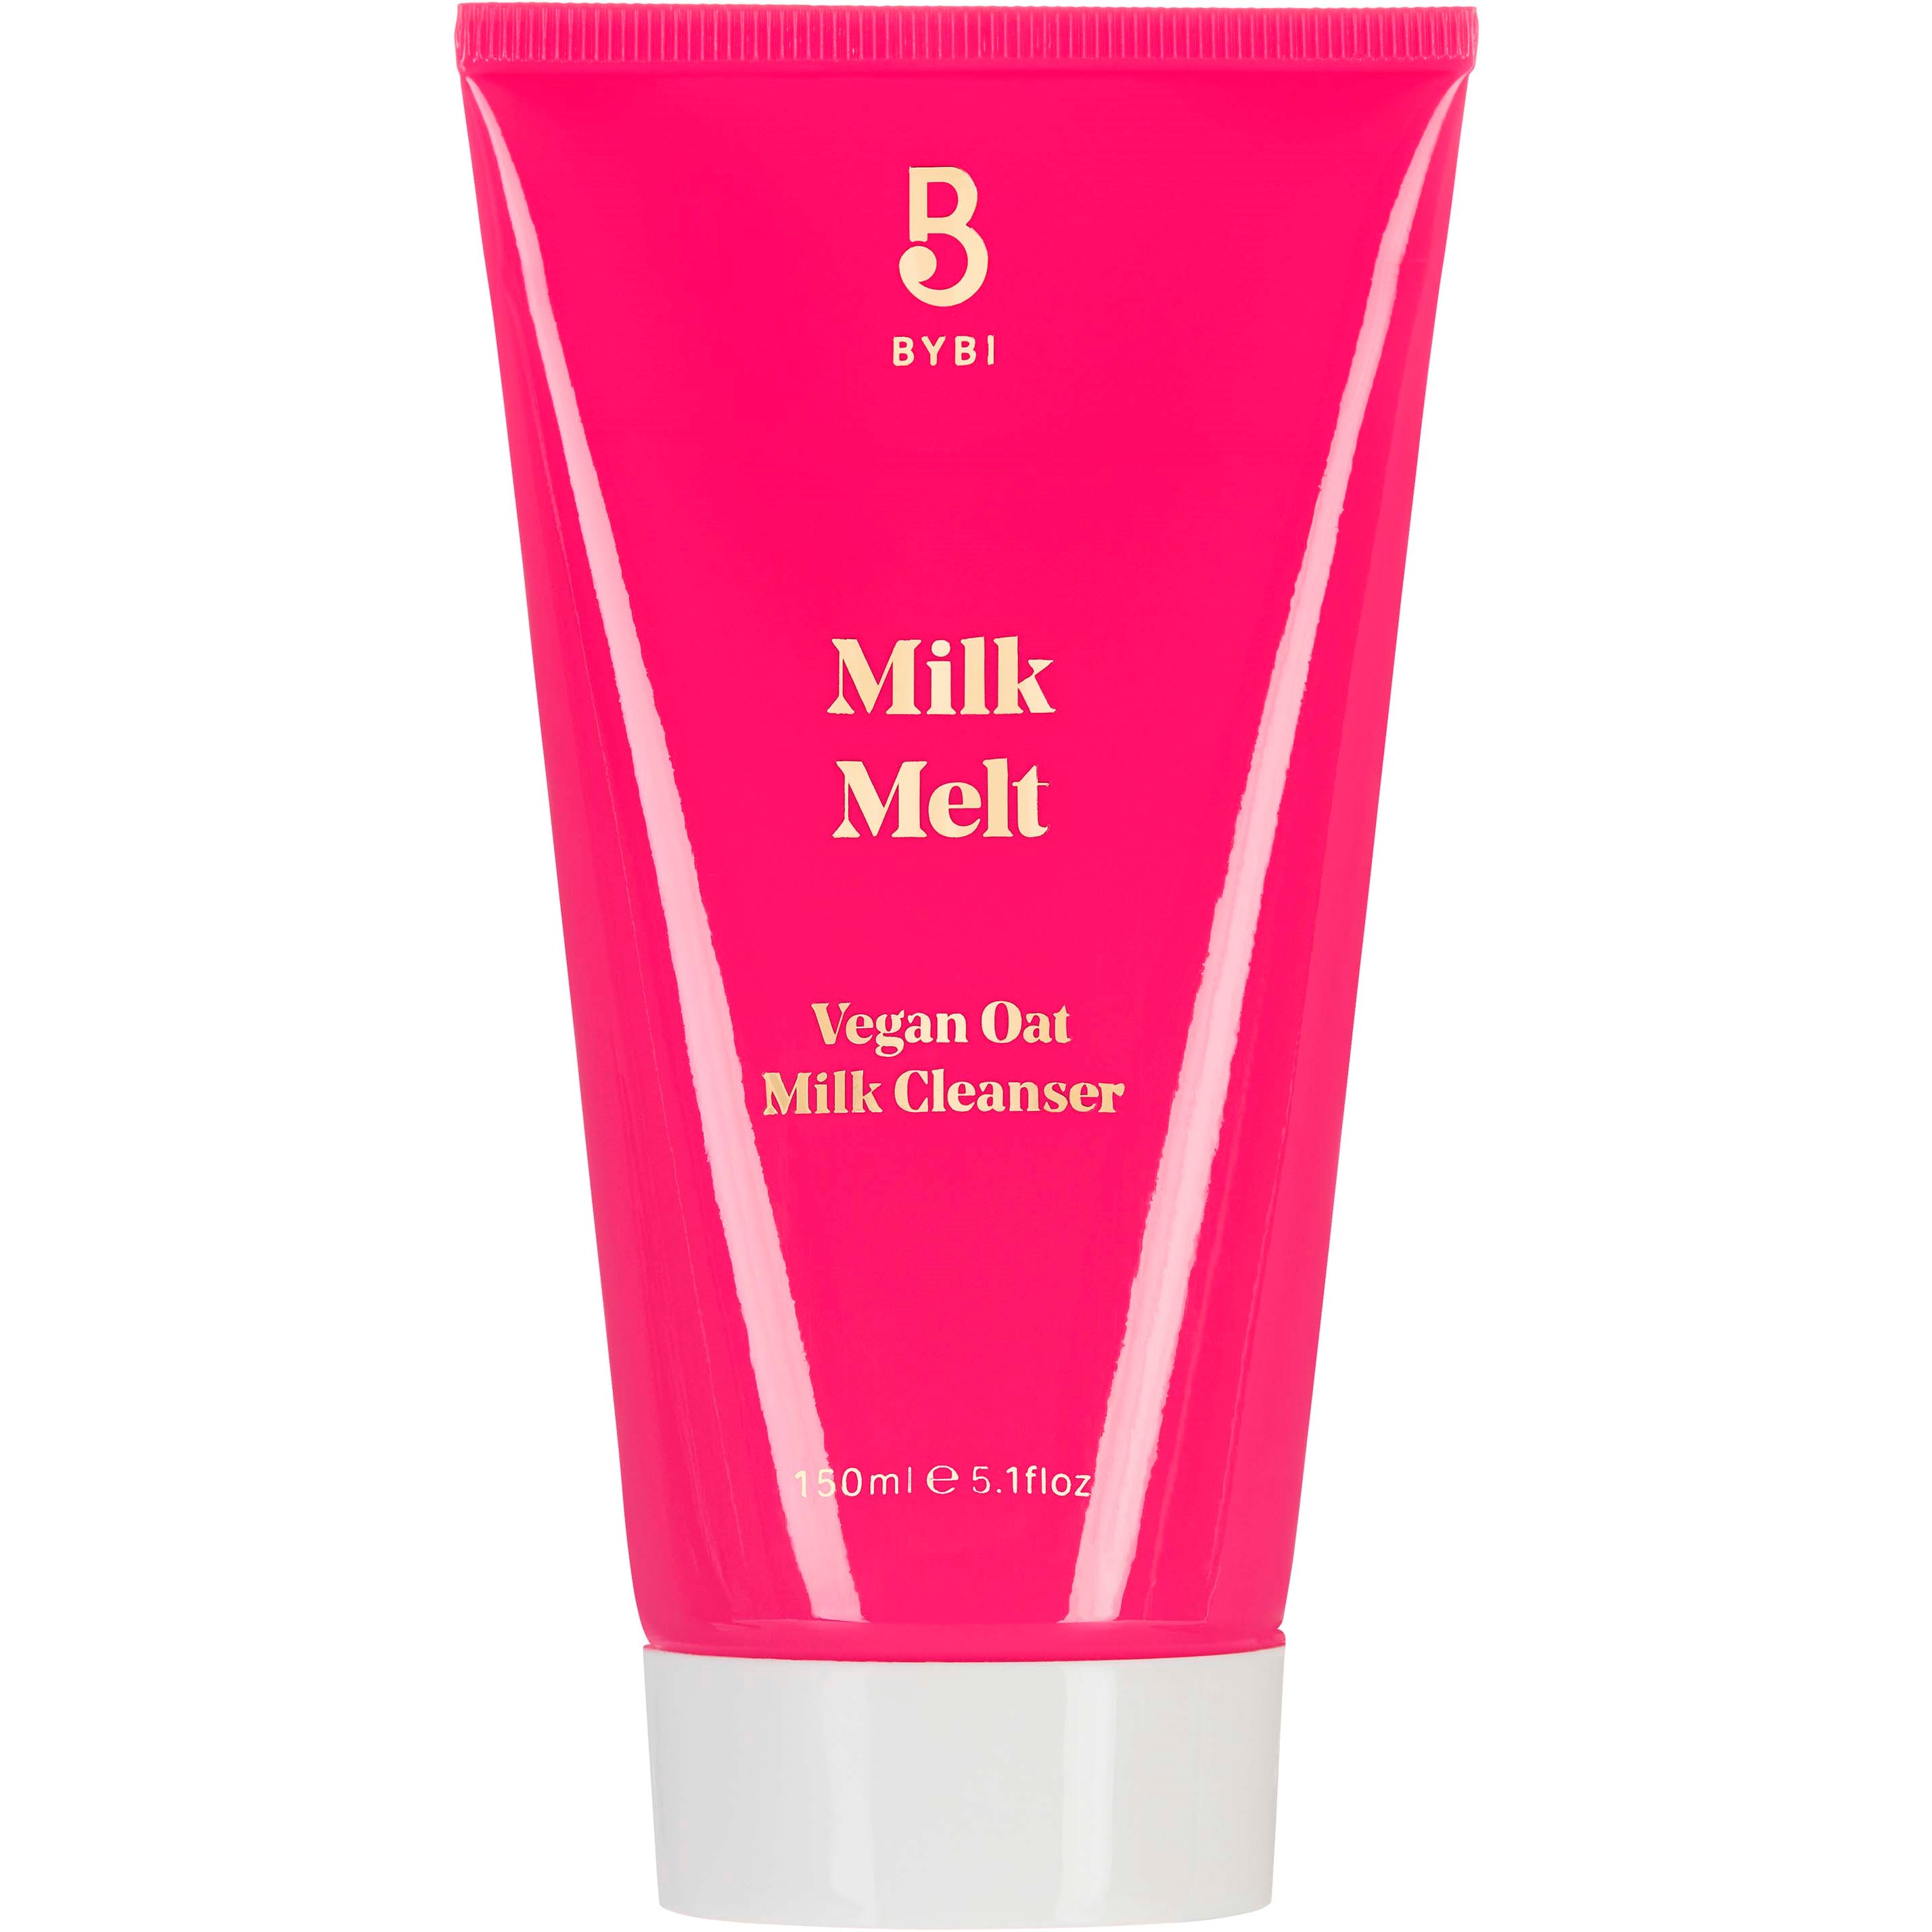 BYBI Beauty Milk Melt Vegan Oat Cleanser, 150 ml